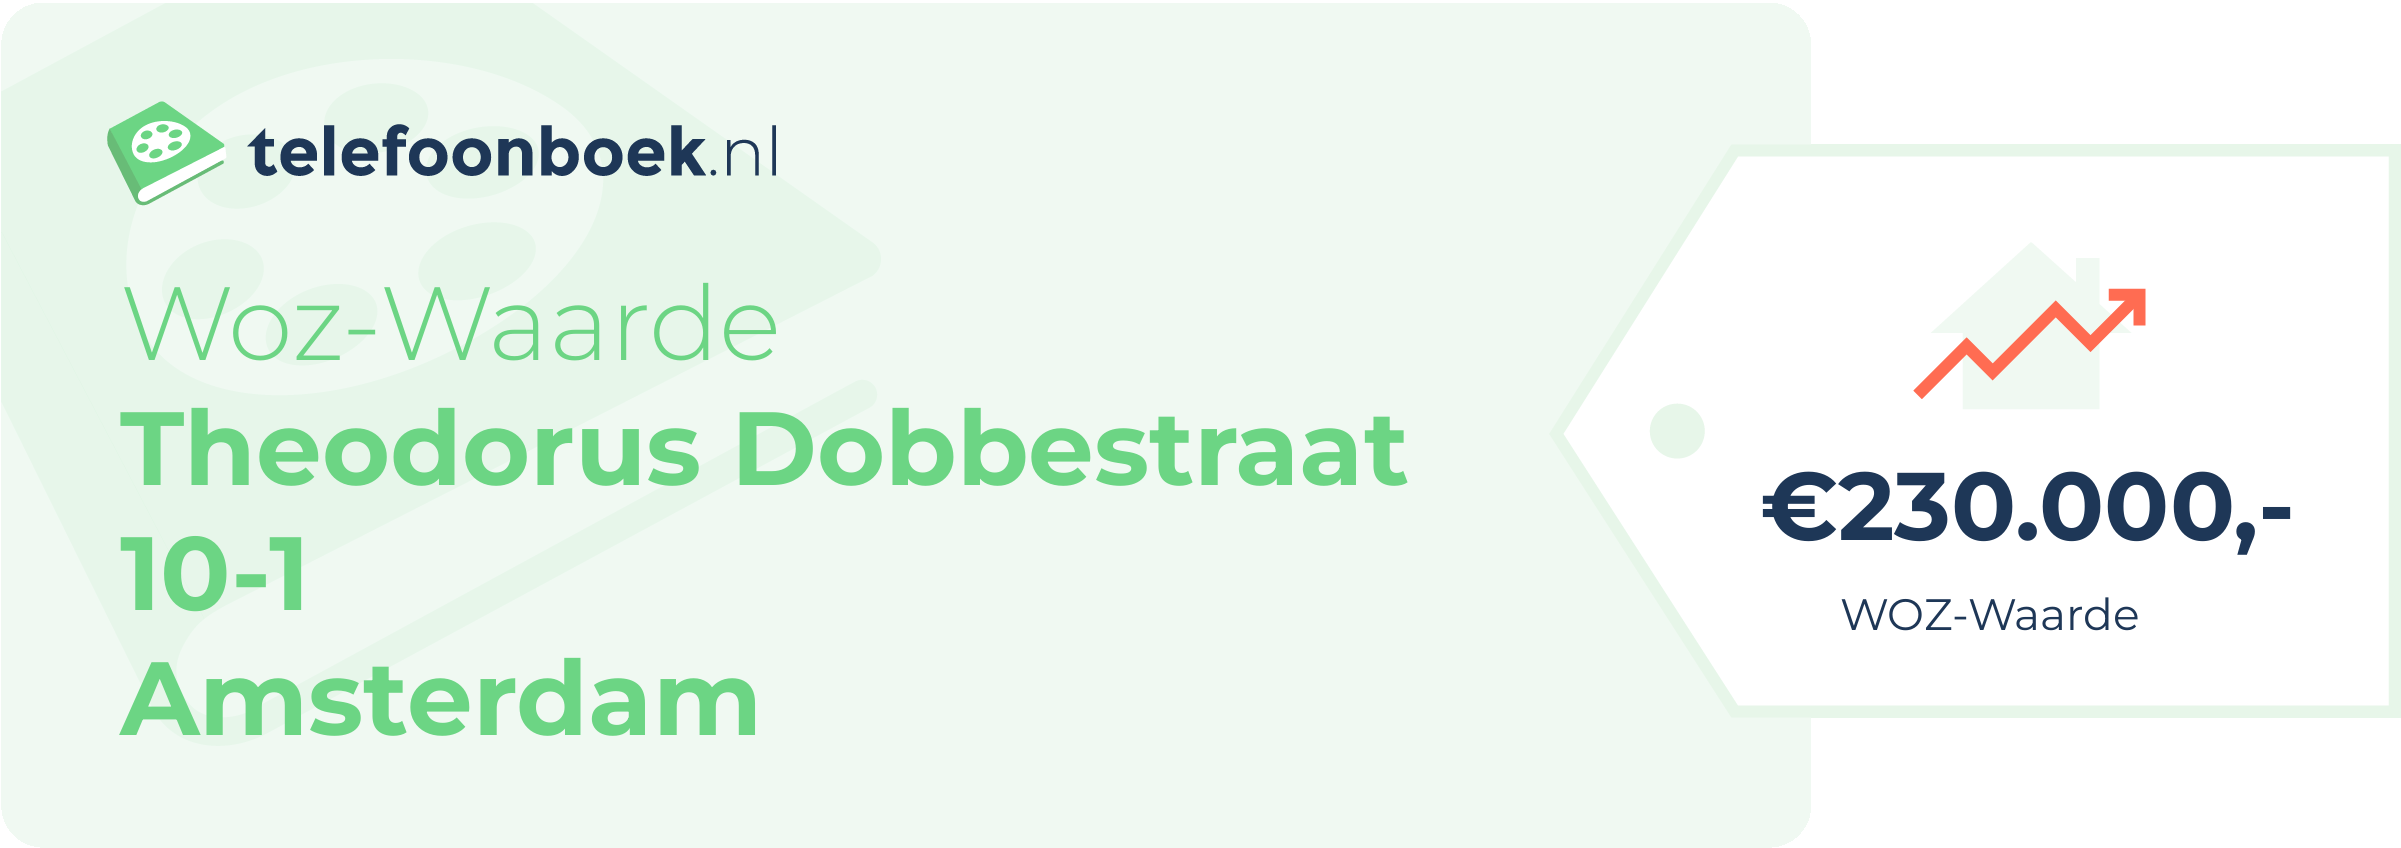 WOZ-waarde Theodorus Dobbestraat 10-1 Amsterdam